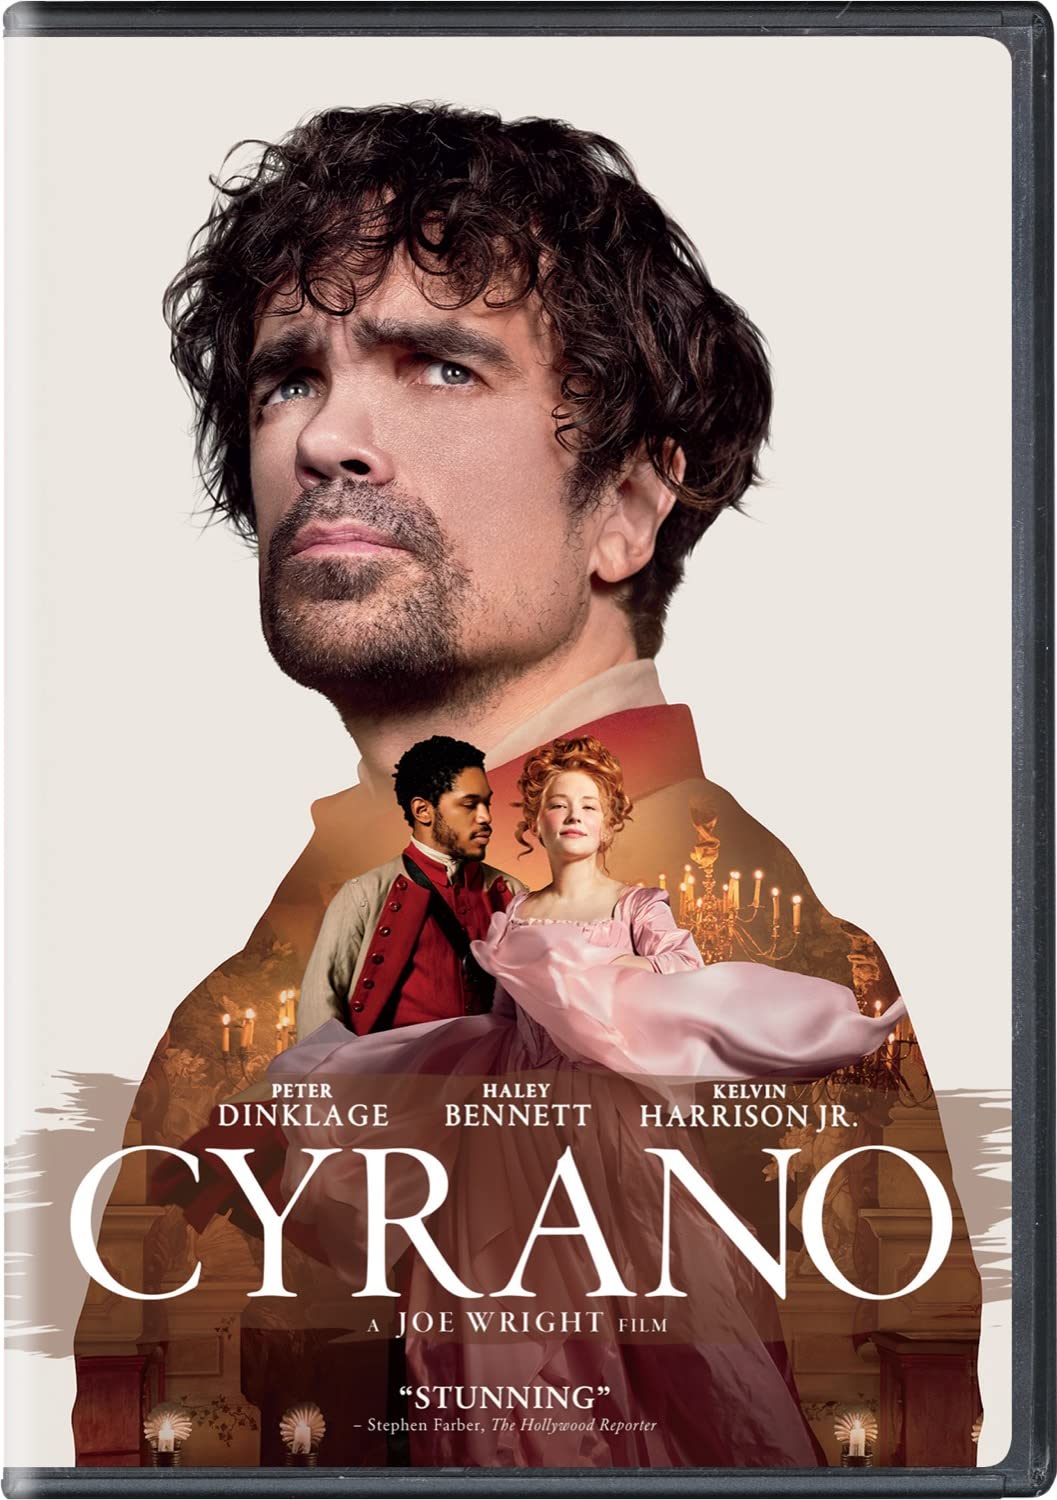 Image for "Cyrano"